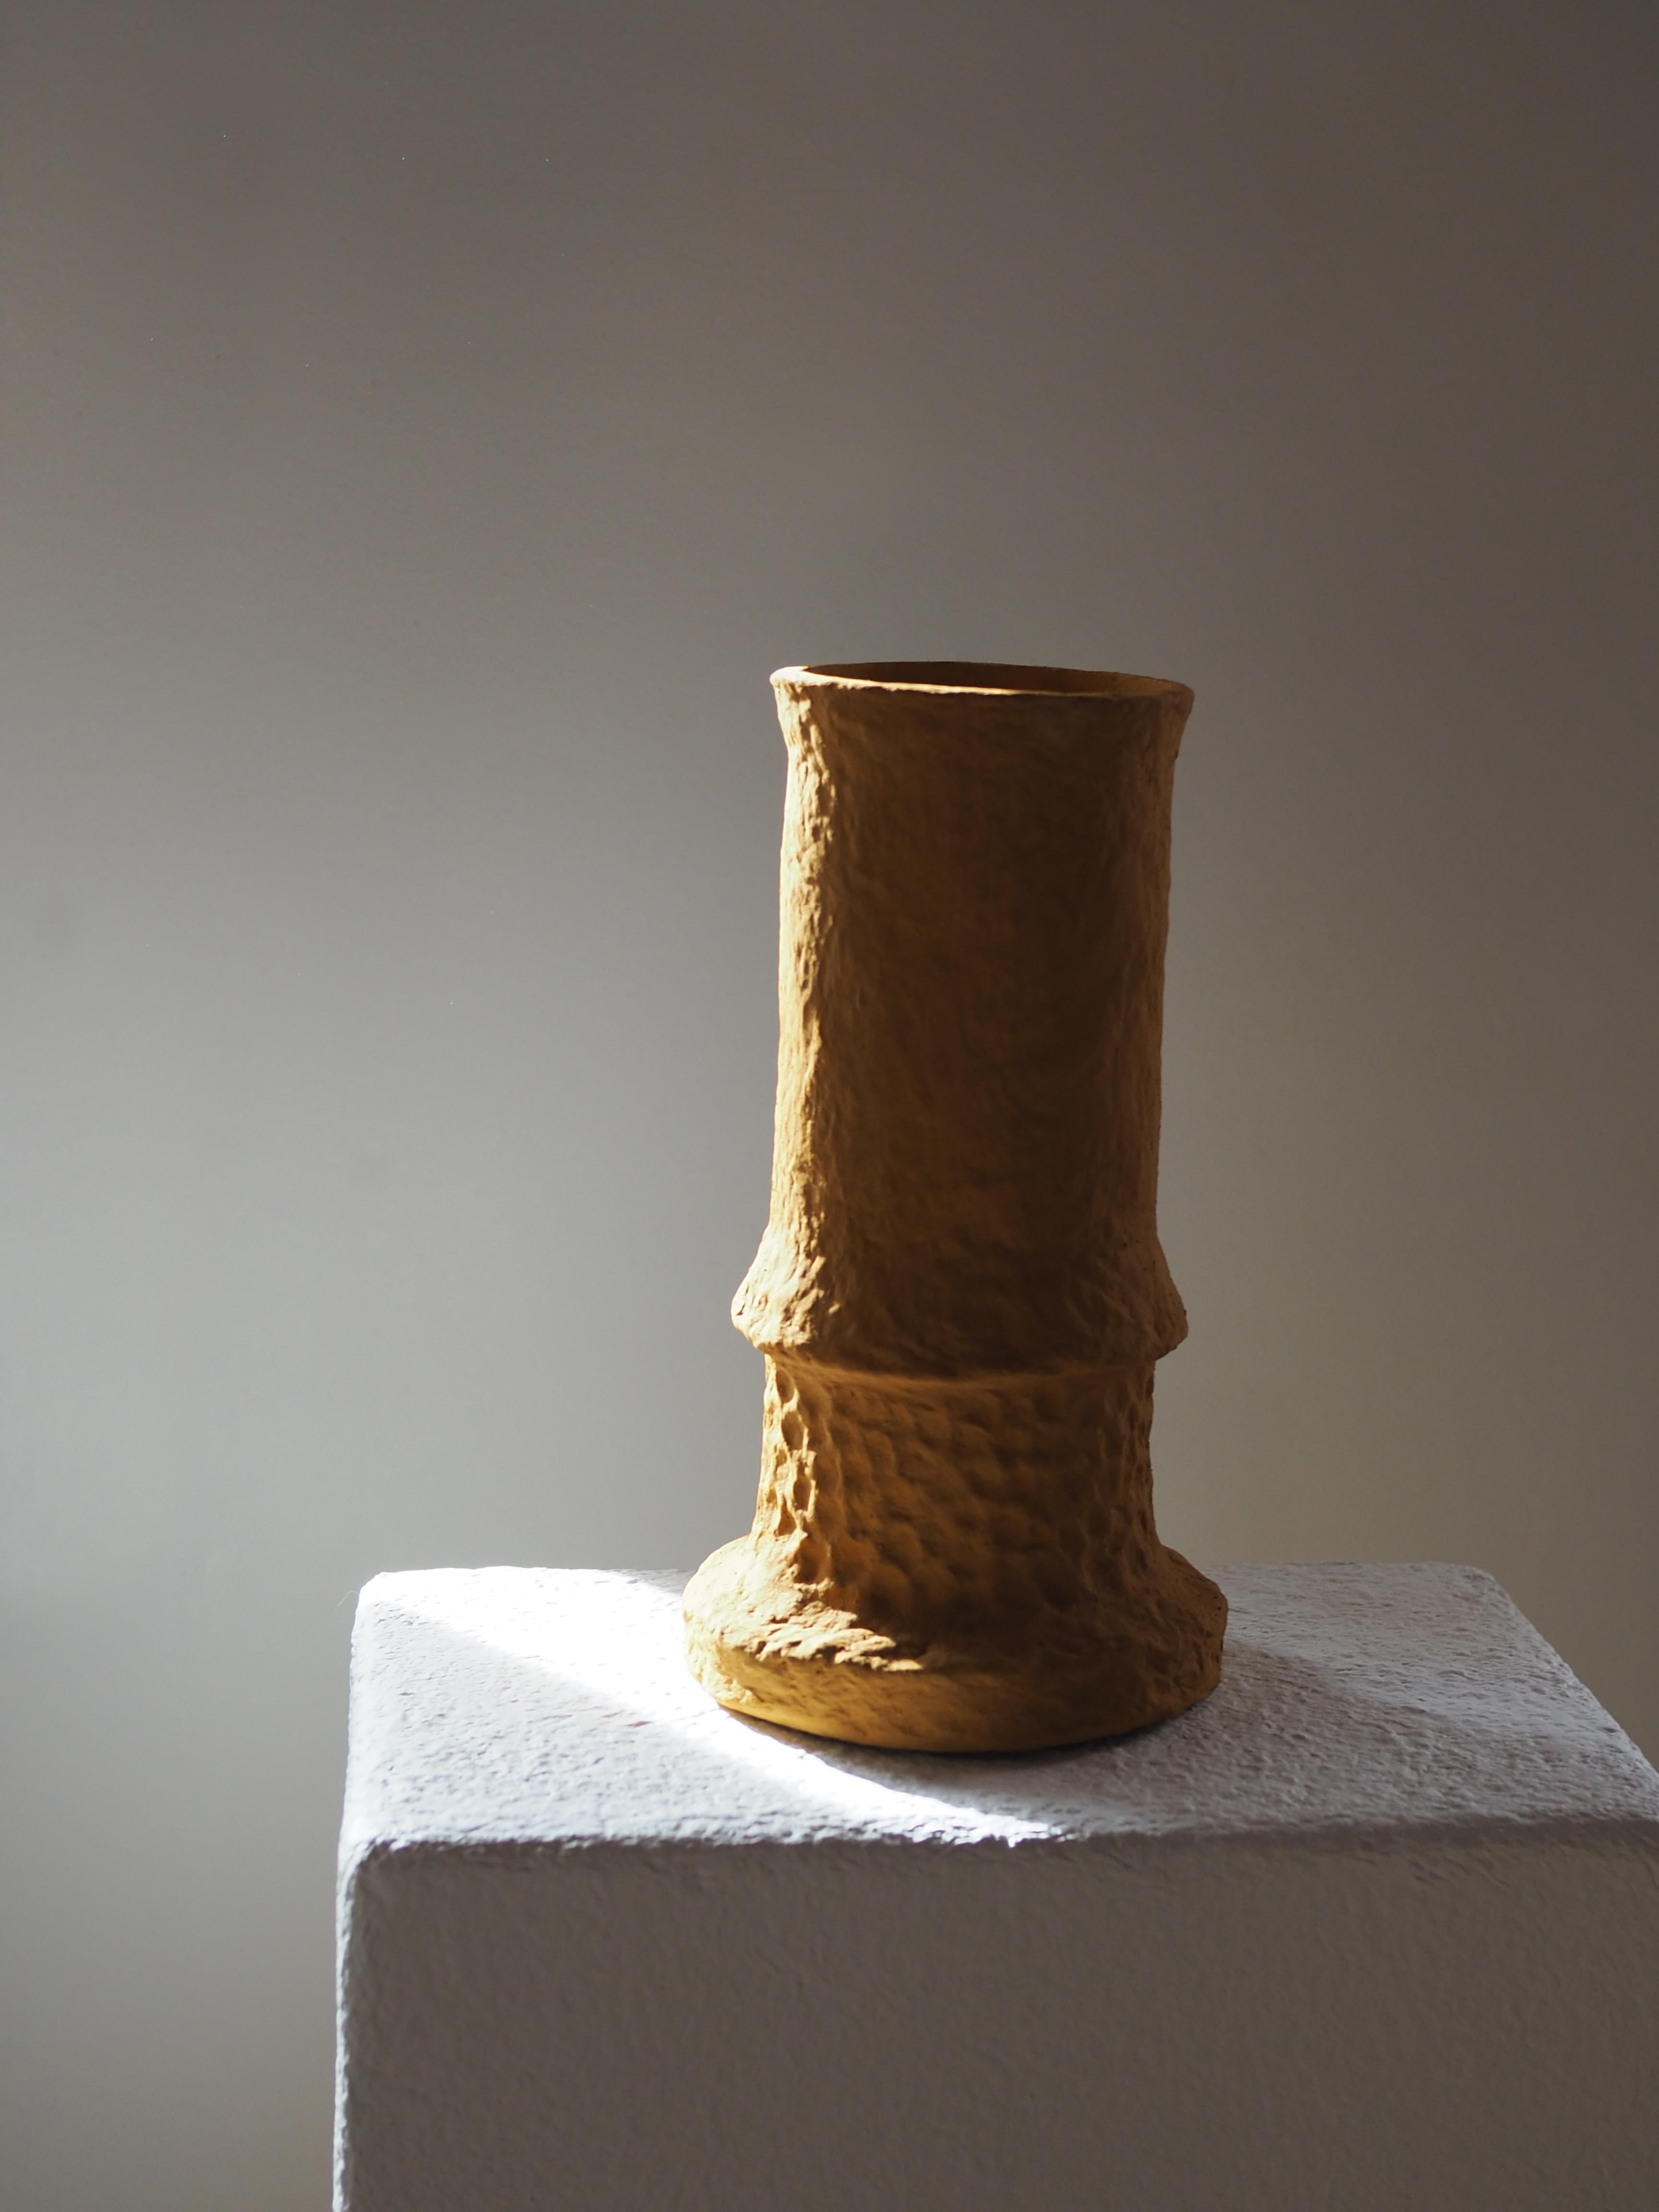 Lykos-Vase 2 von Pauline Pietri
Einzigartiges Stück.
Abmessungen: Ø 14 x H 25 cm. 
MATERIALIEN: Papierzellstoff und ultramarinblaue Farbe auf Biobasis.

Ökologisch gestaltete Vase auf der Grundlage von Zellstoff - Pappe, Papier, Zeitungen usw. Die